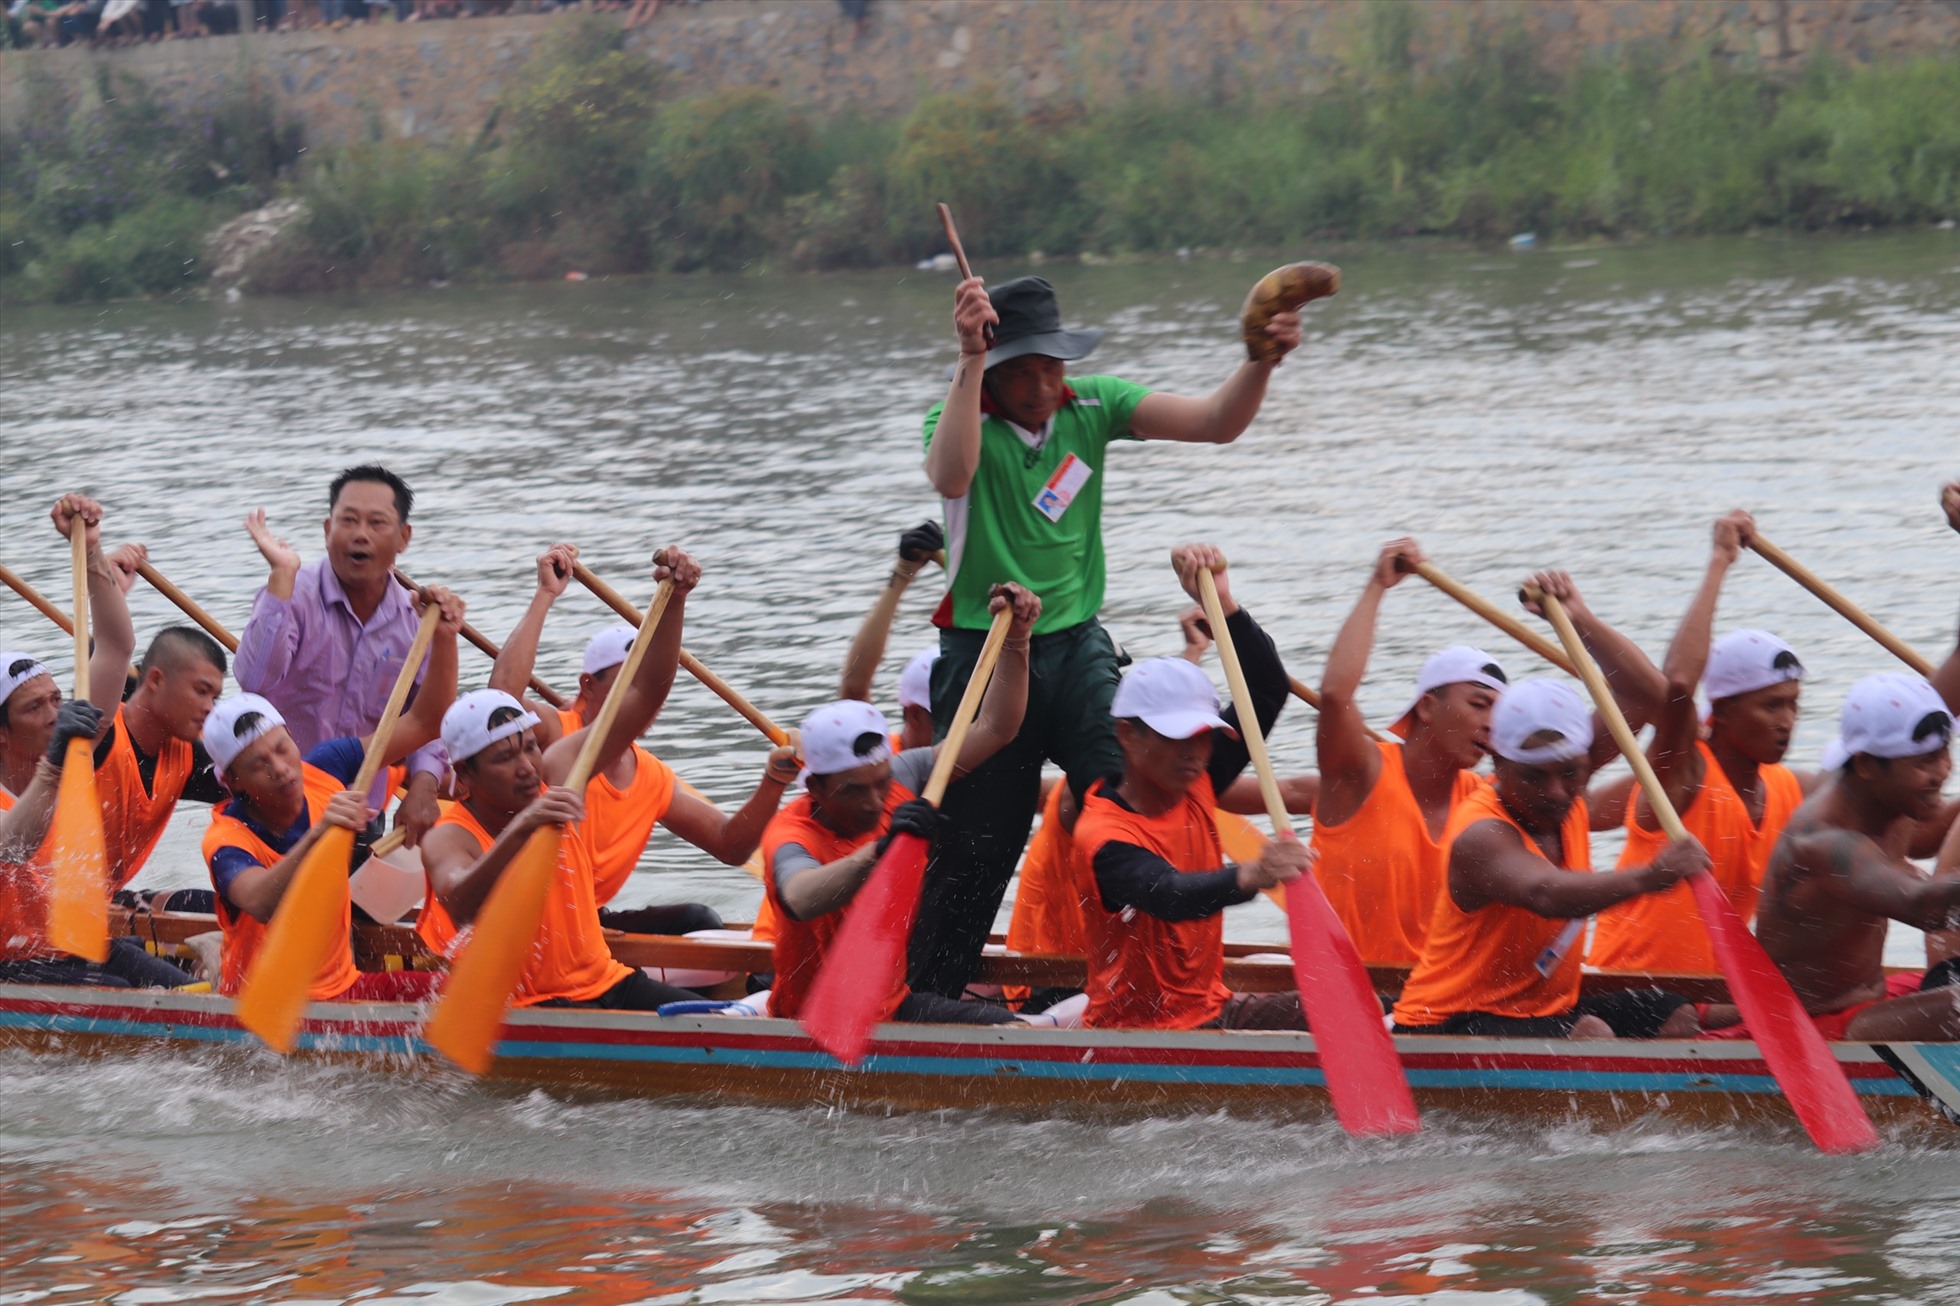 Dòng sông Kiến Giang như “dậy sóng” bởi các đội đua bơi trong ngày Tết Độc lập 2.9. Ảnh: CTV